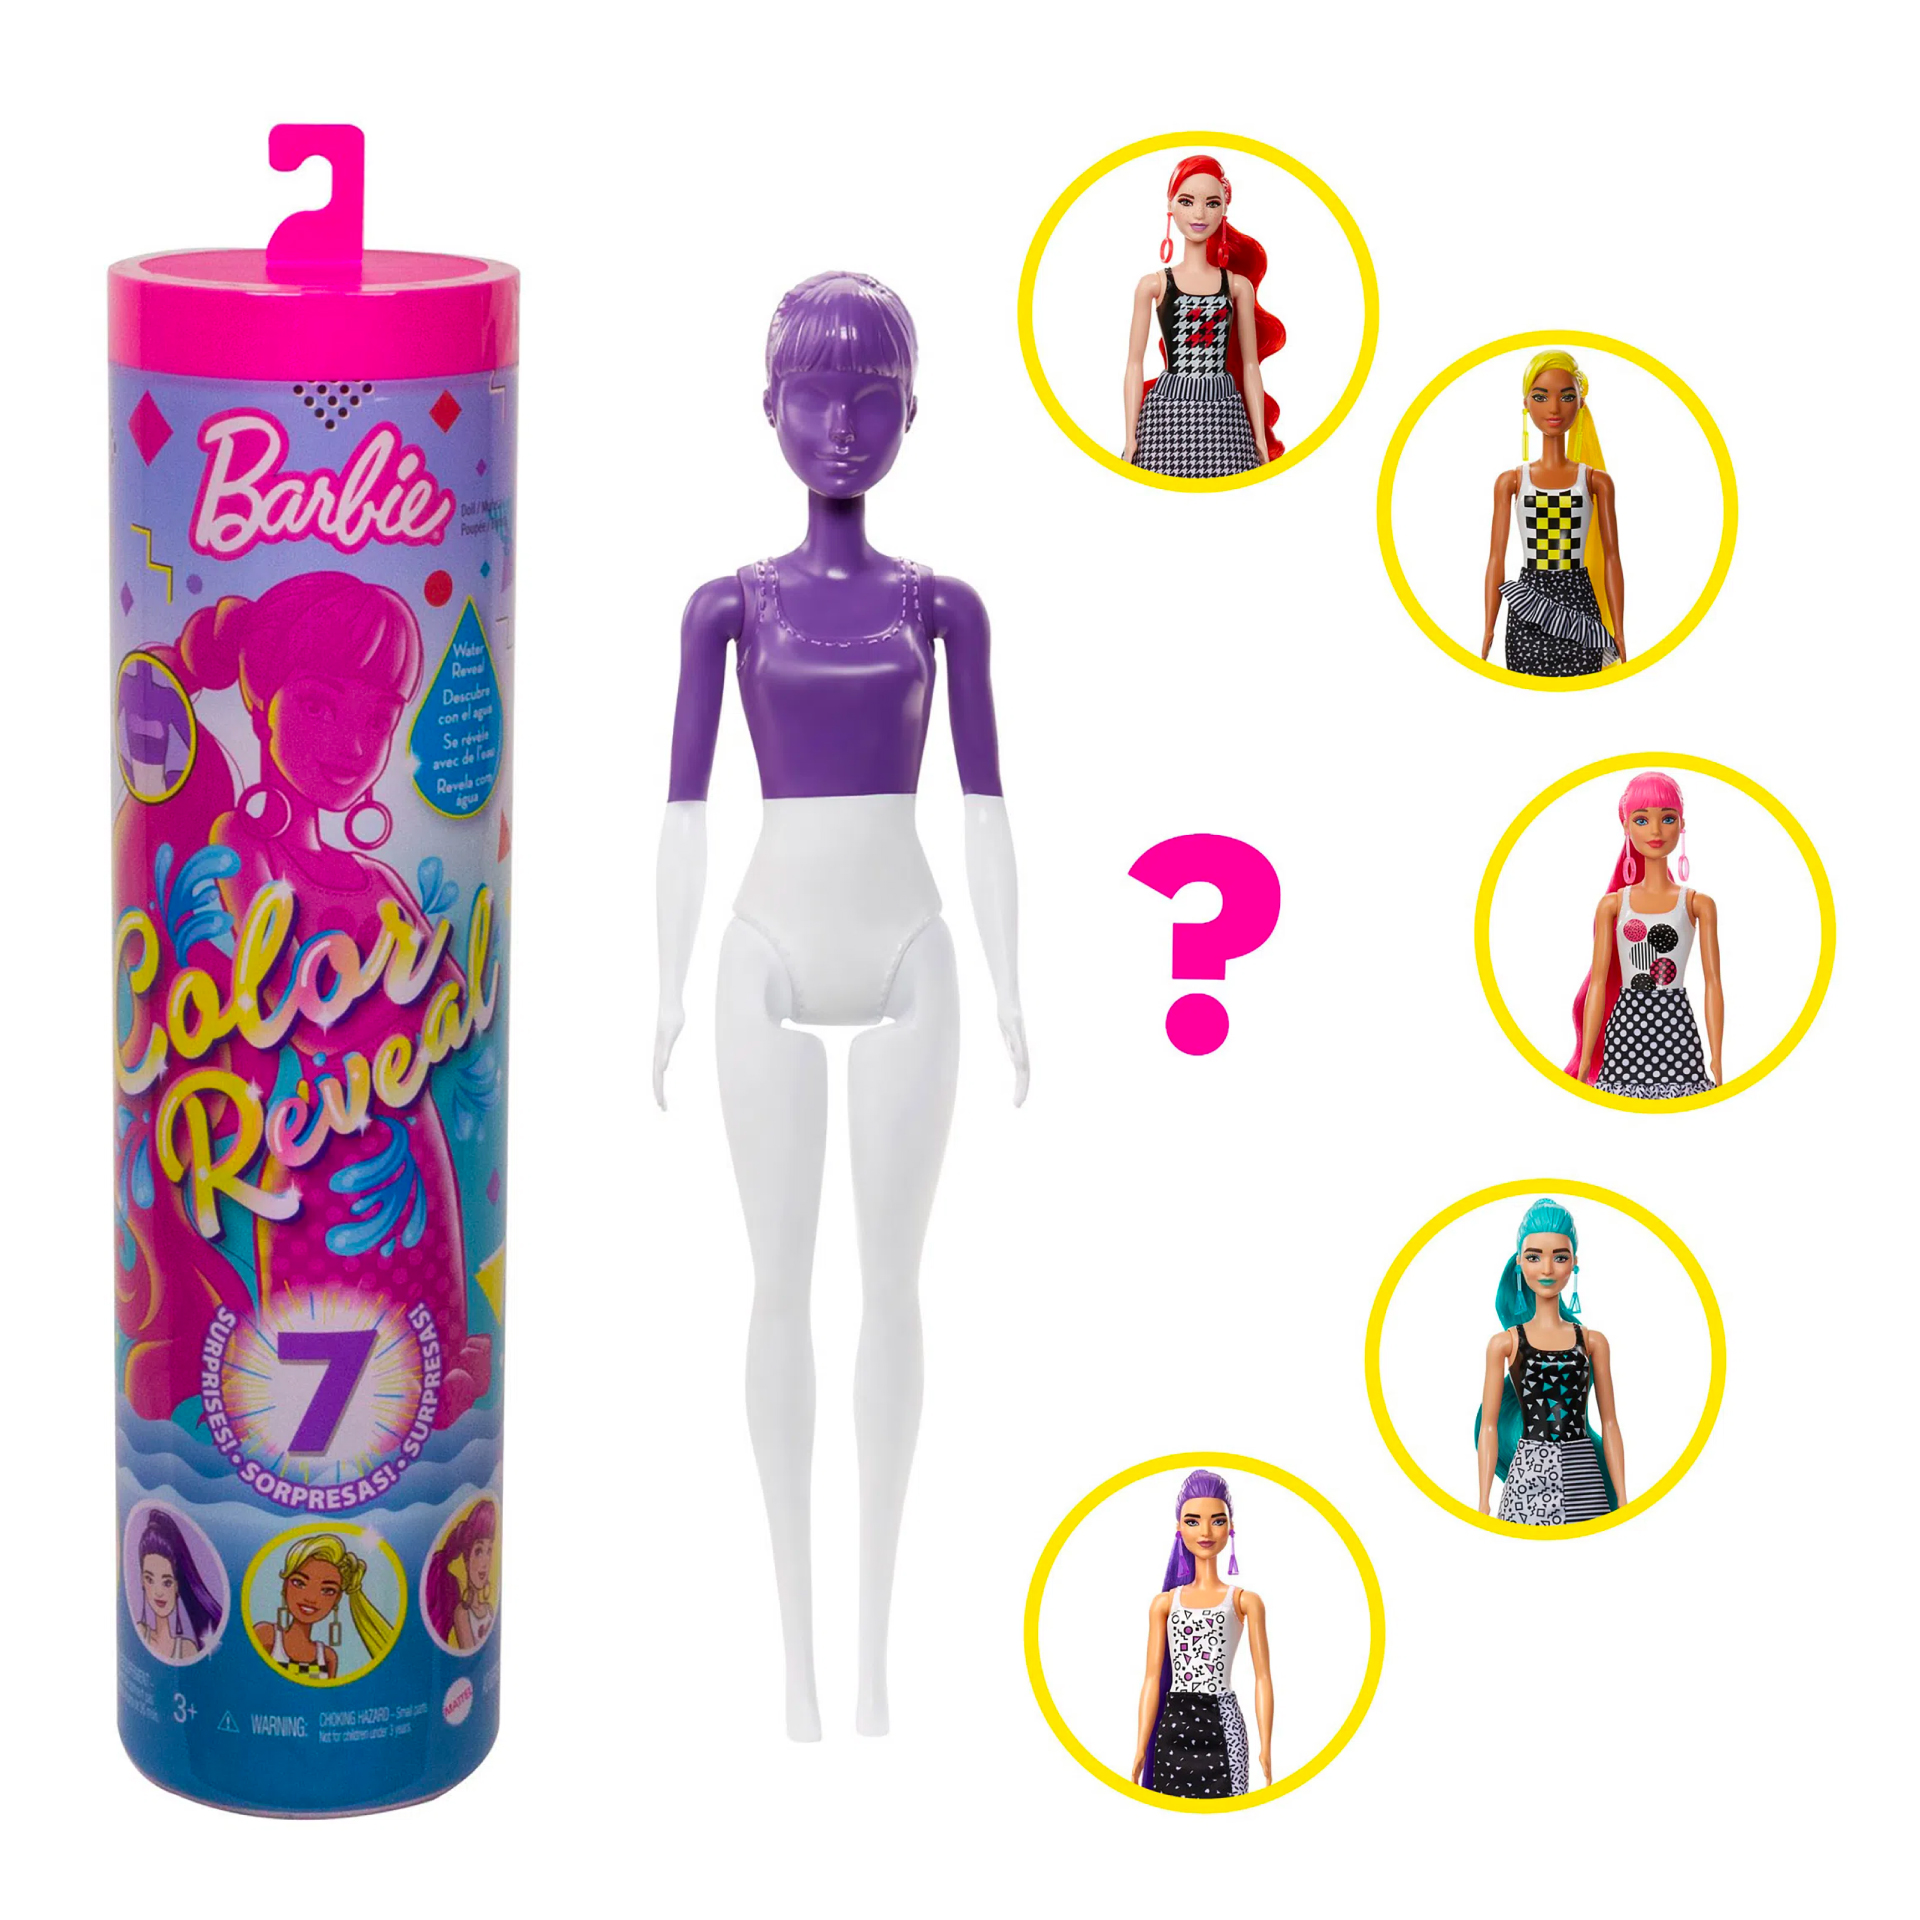 Barbie Color Reveal Doll Sweet Fruit Series Blonde Red Streaks